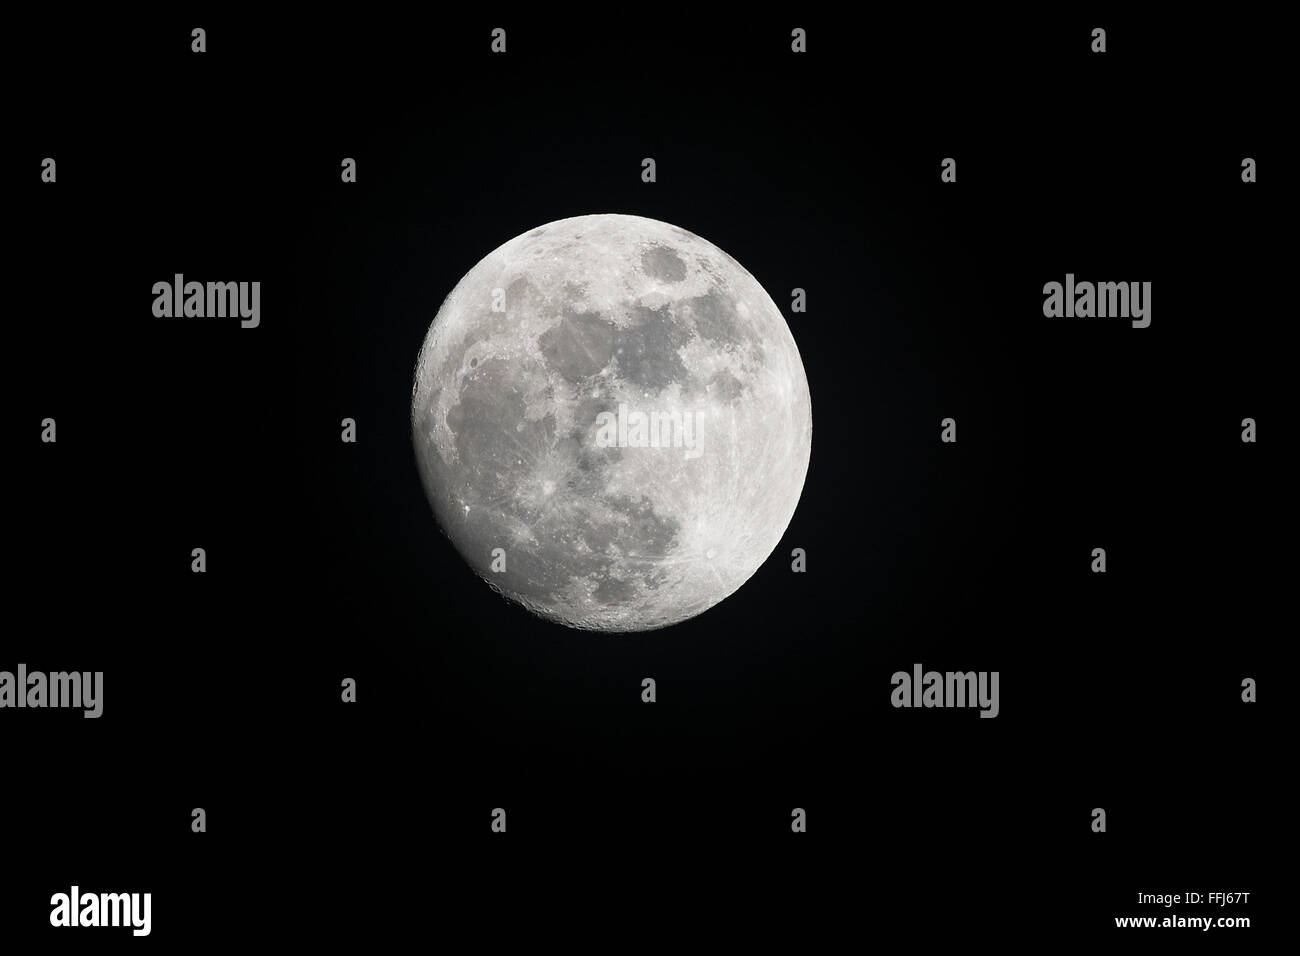 Imagen de una luna llena, rodada durante los espectáculos de la noche la luz de la luna, destacando las características del planeta. Foto de stock